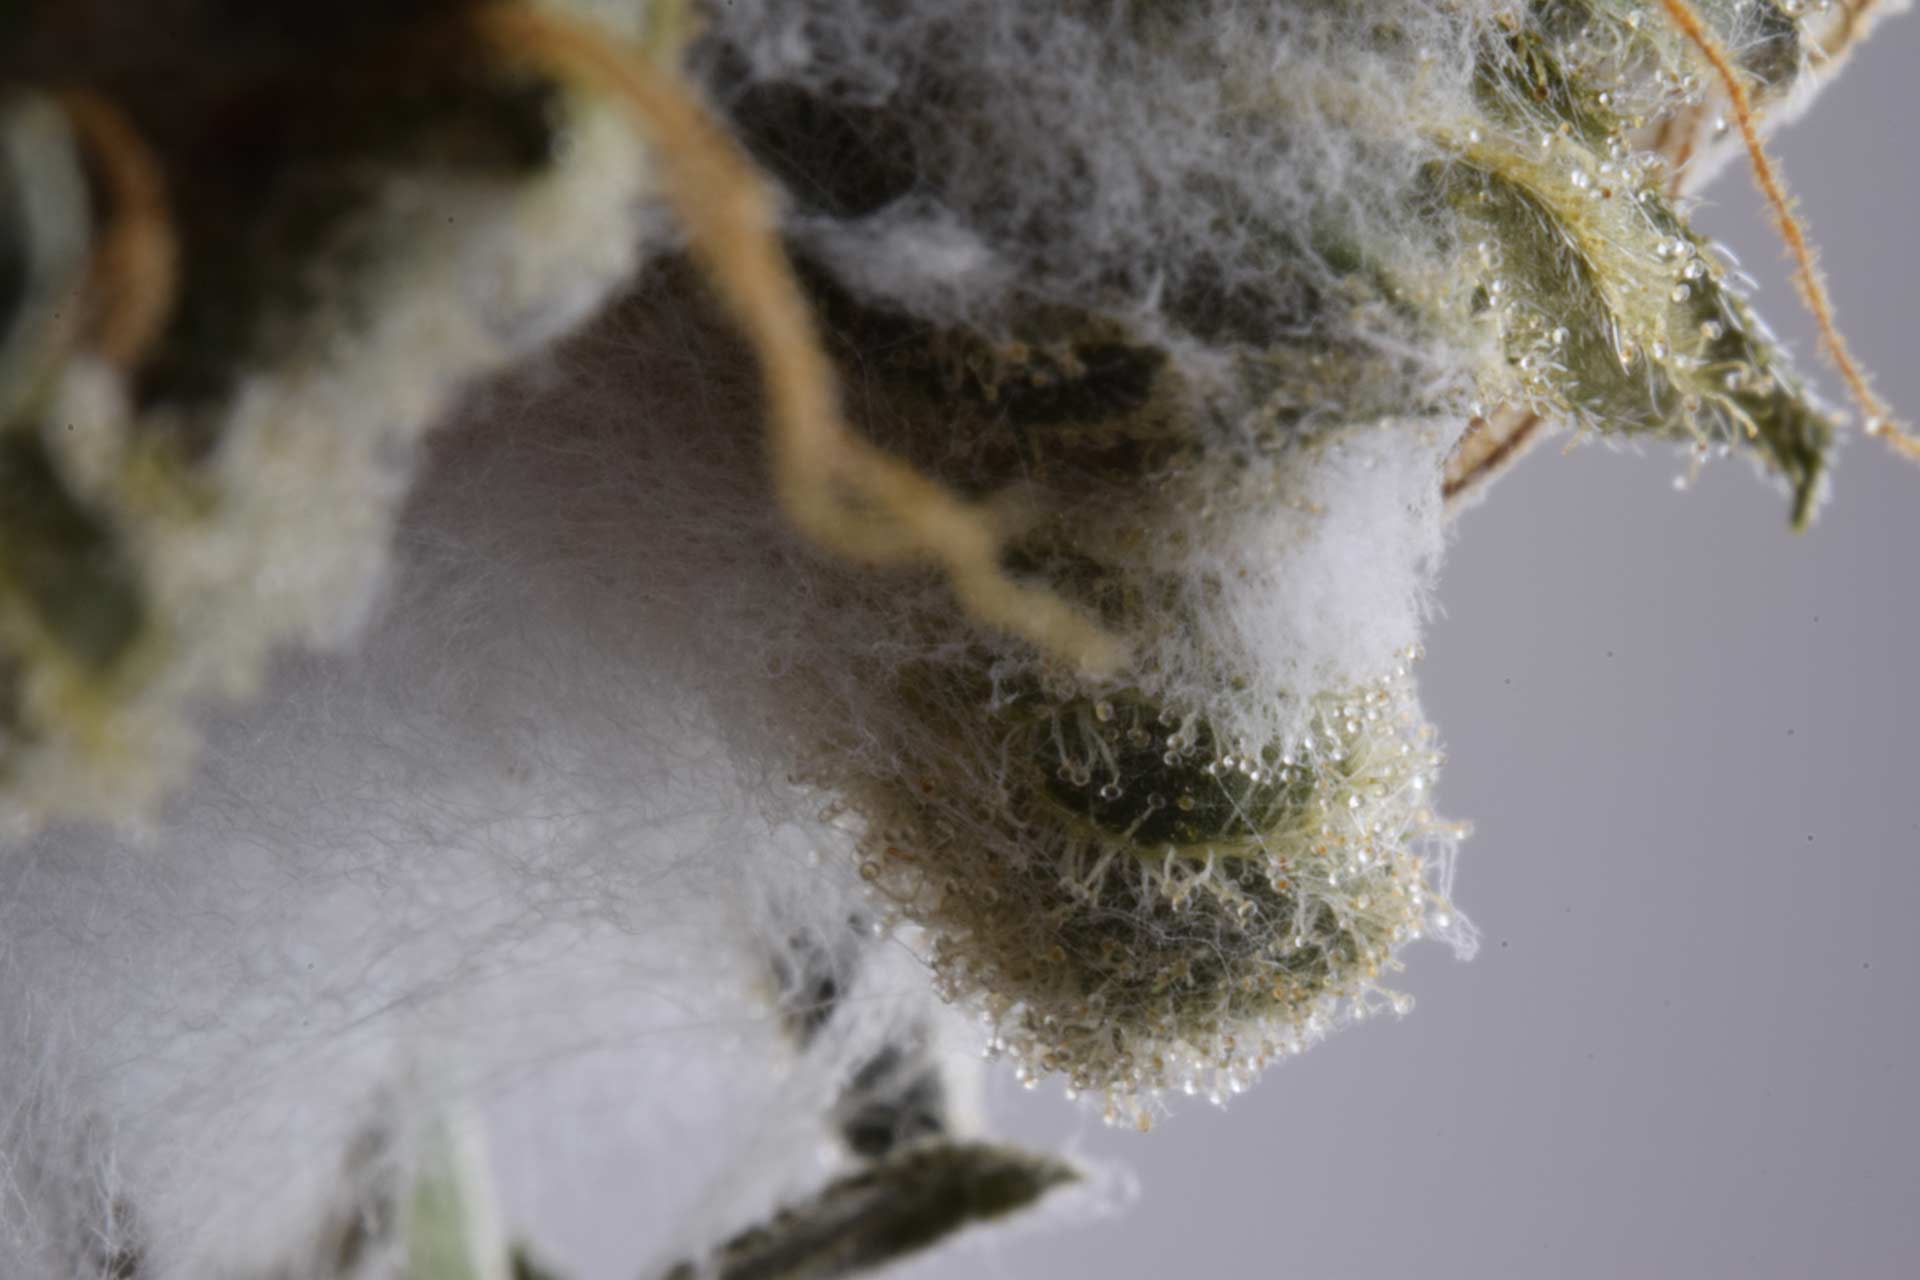 moldy cannabis